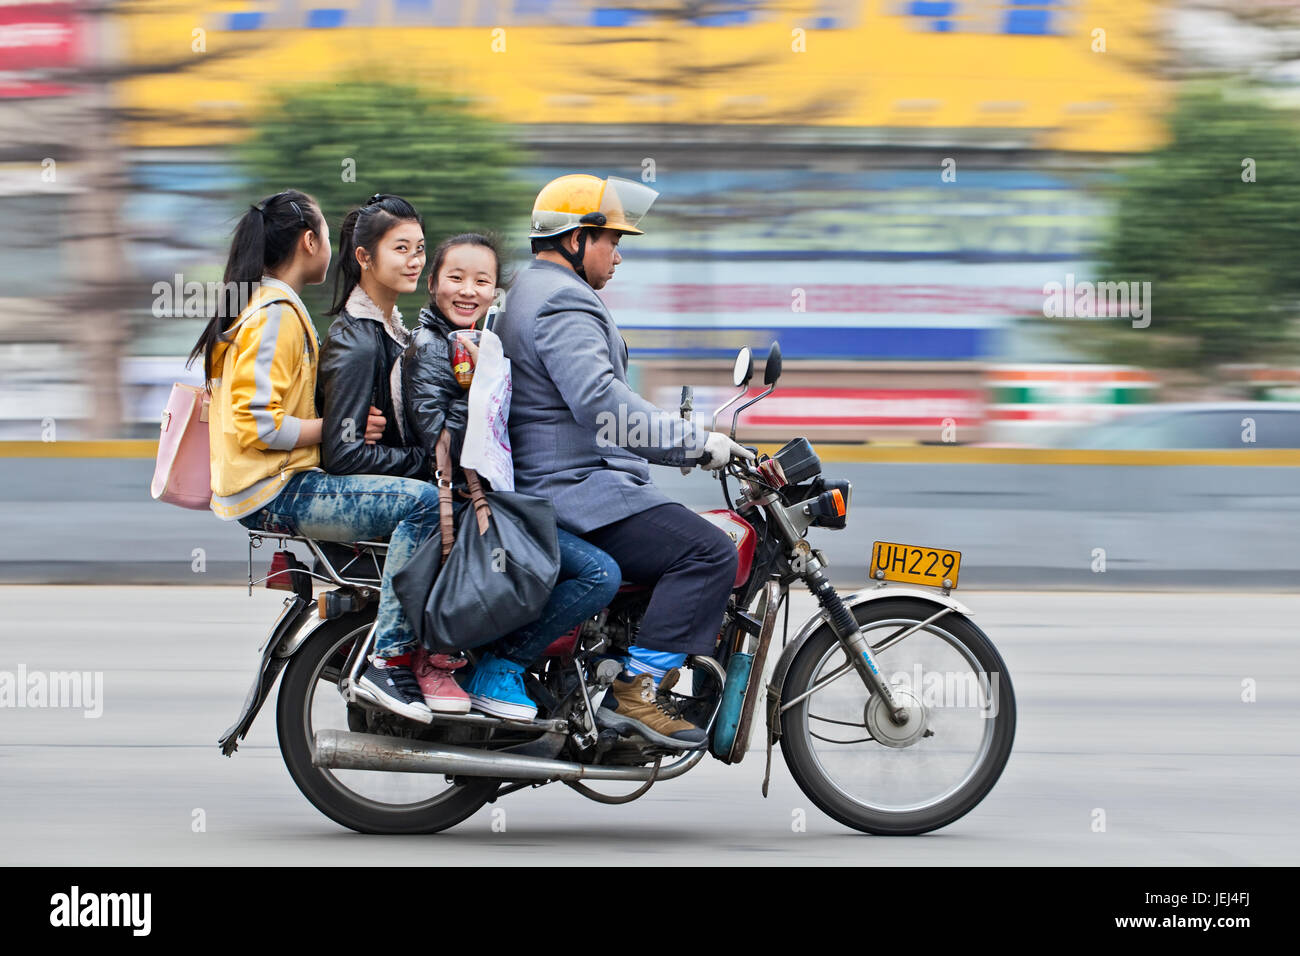 GUANGZHOU-FÉVRIER. 22, 2012. Taxi moto avec trois jeunes filles gaies sur la route avec mouvement flou arrière-plan. Banque D'Images